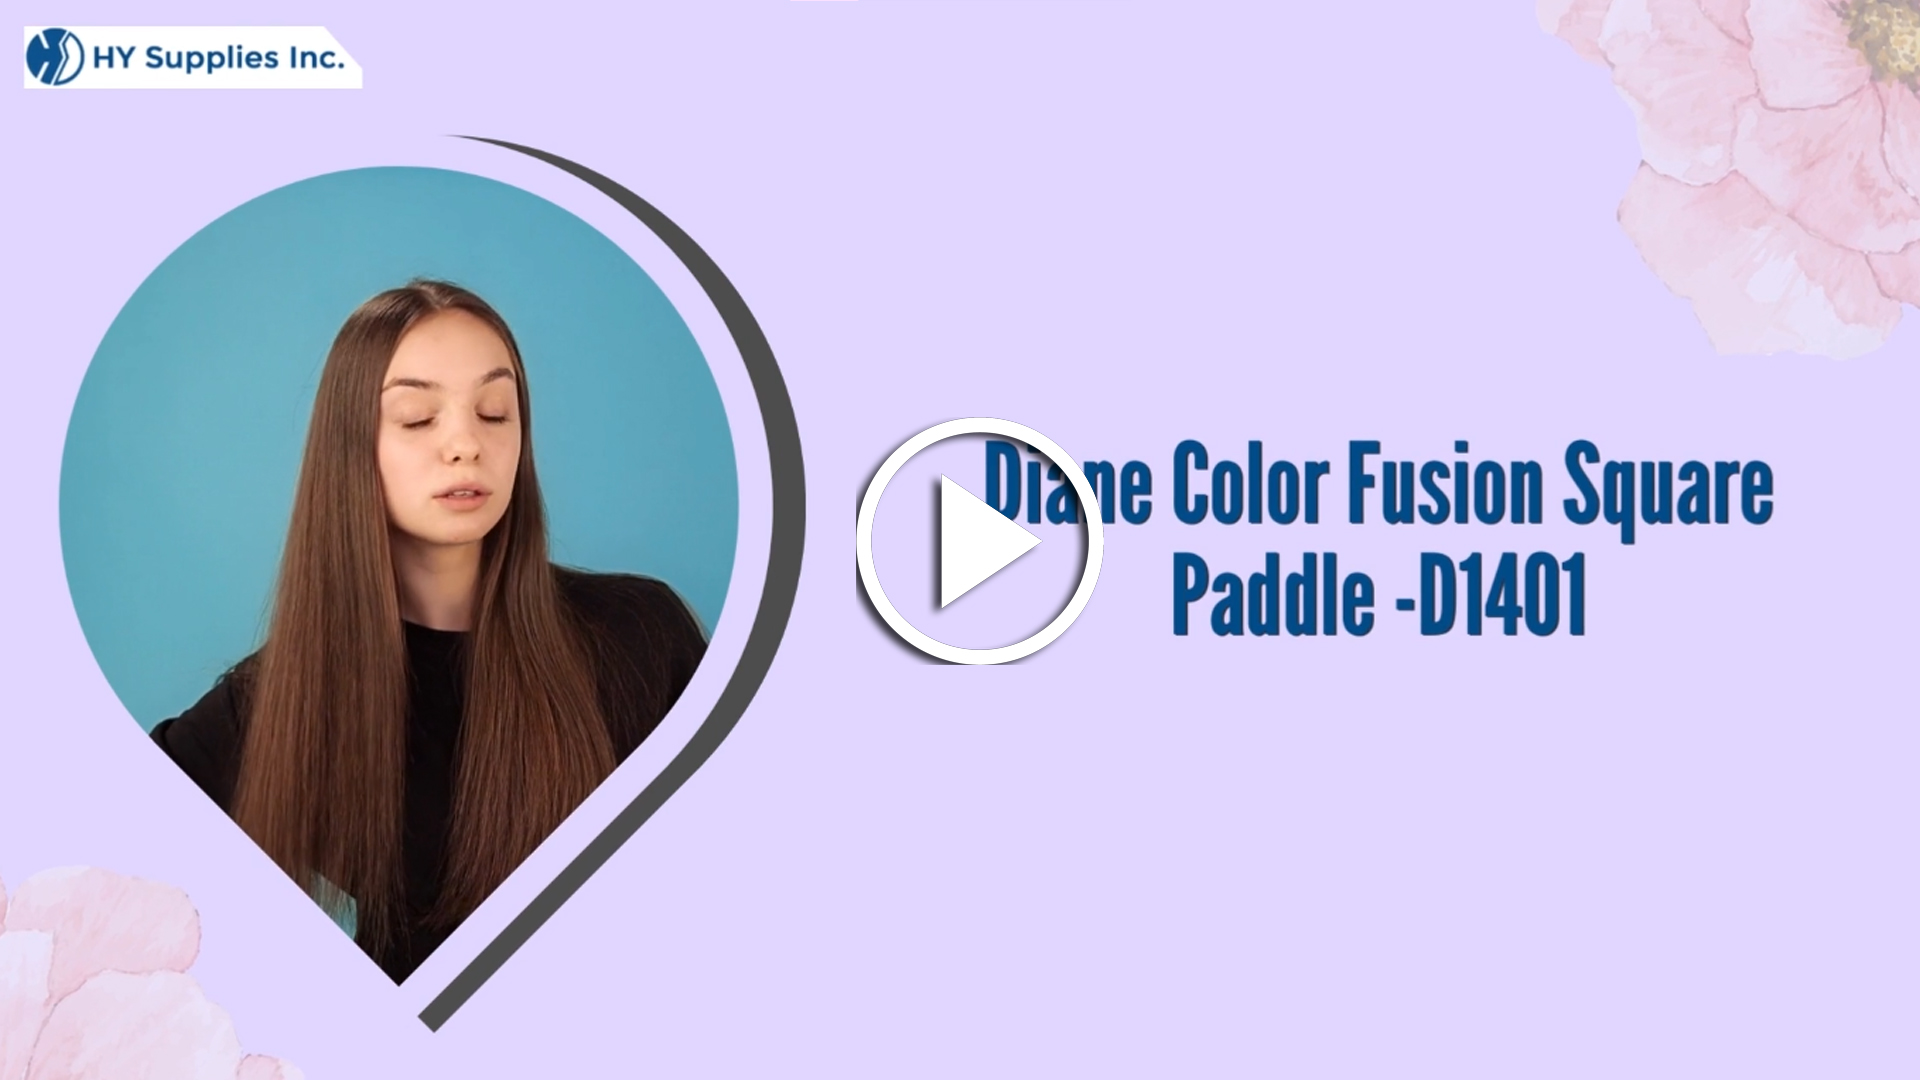 Diane Color Fusion Square Paddle -D1401